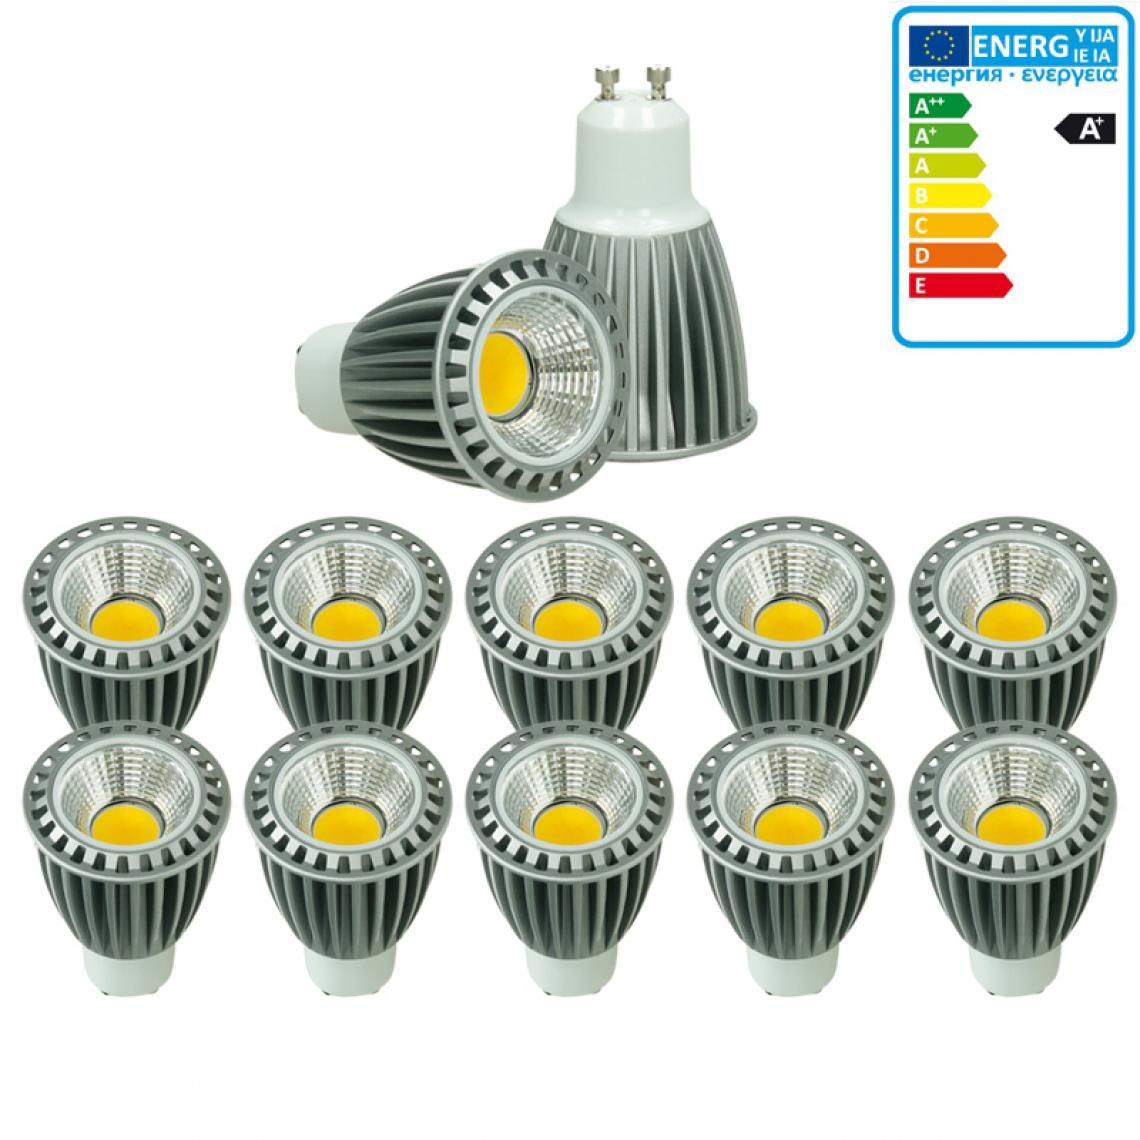 Ecd Germany - ECD Germany 10 x GU10 LED COB Spot 9W Lampe d'économie d'énergie d'environ 466 lumens remplace Lampe halogène 60W 2800K blanc chaud Réglable - Ampoules LED